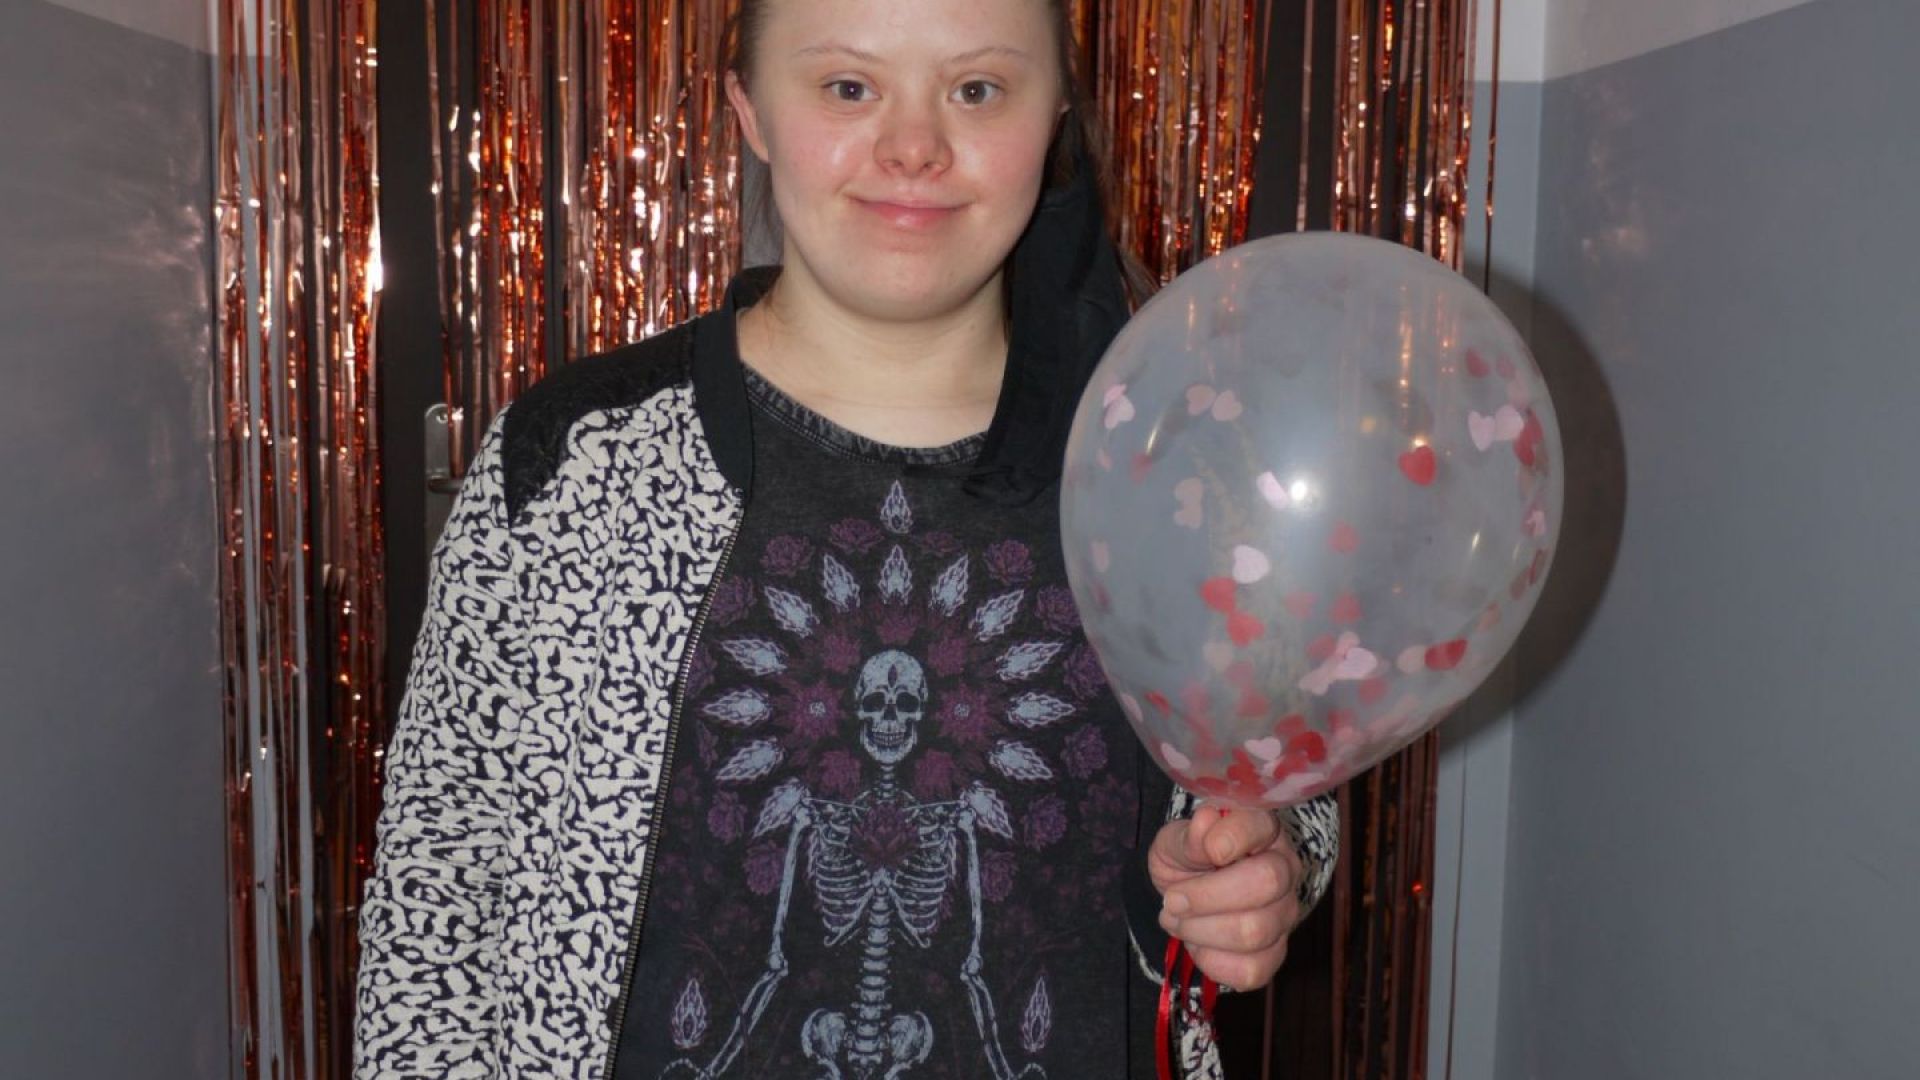 Marta Cz. pozująca z balonem w ręku na ściance udekorowanej balonami, serpentynami i serduszkami.